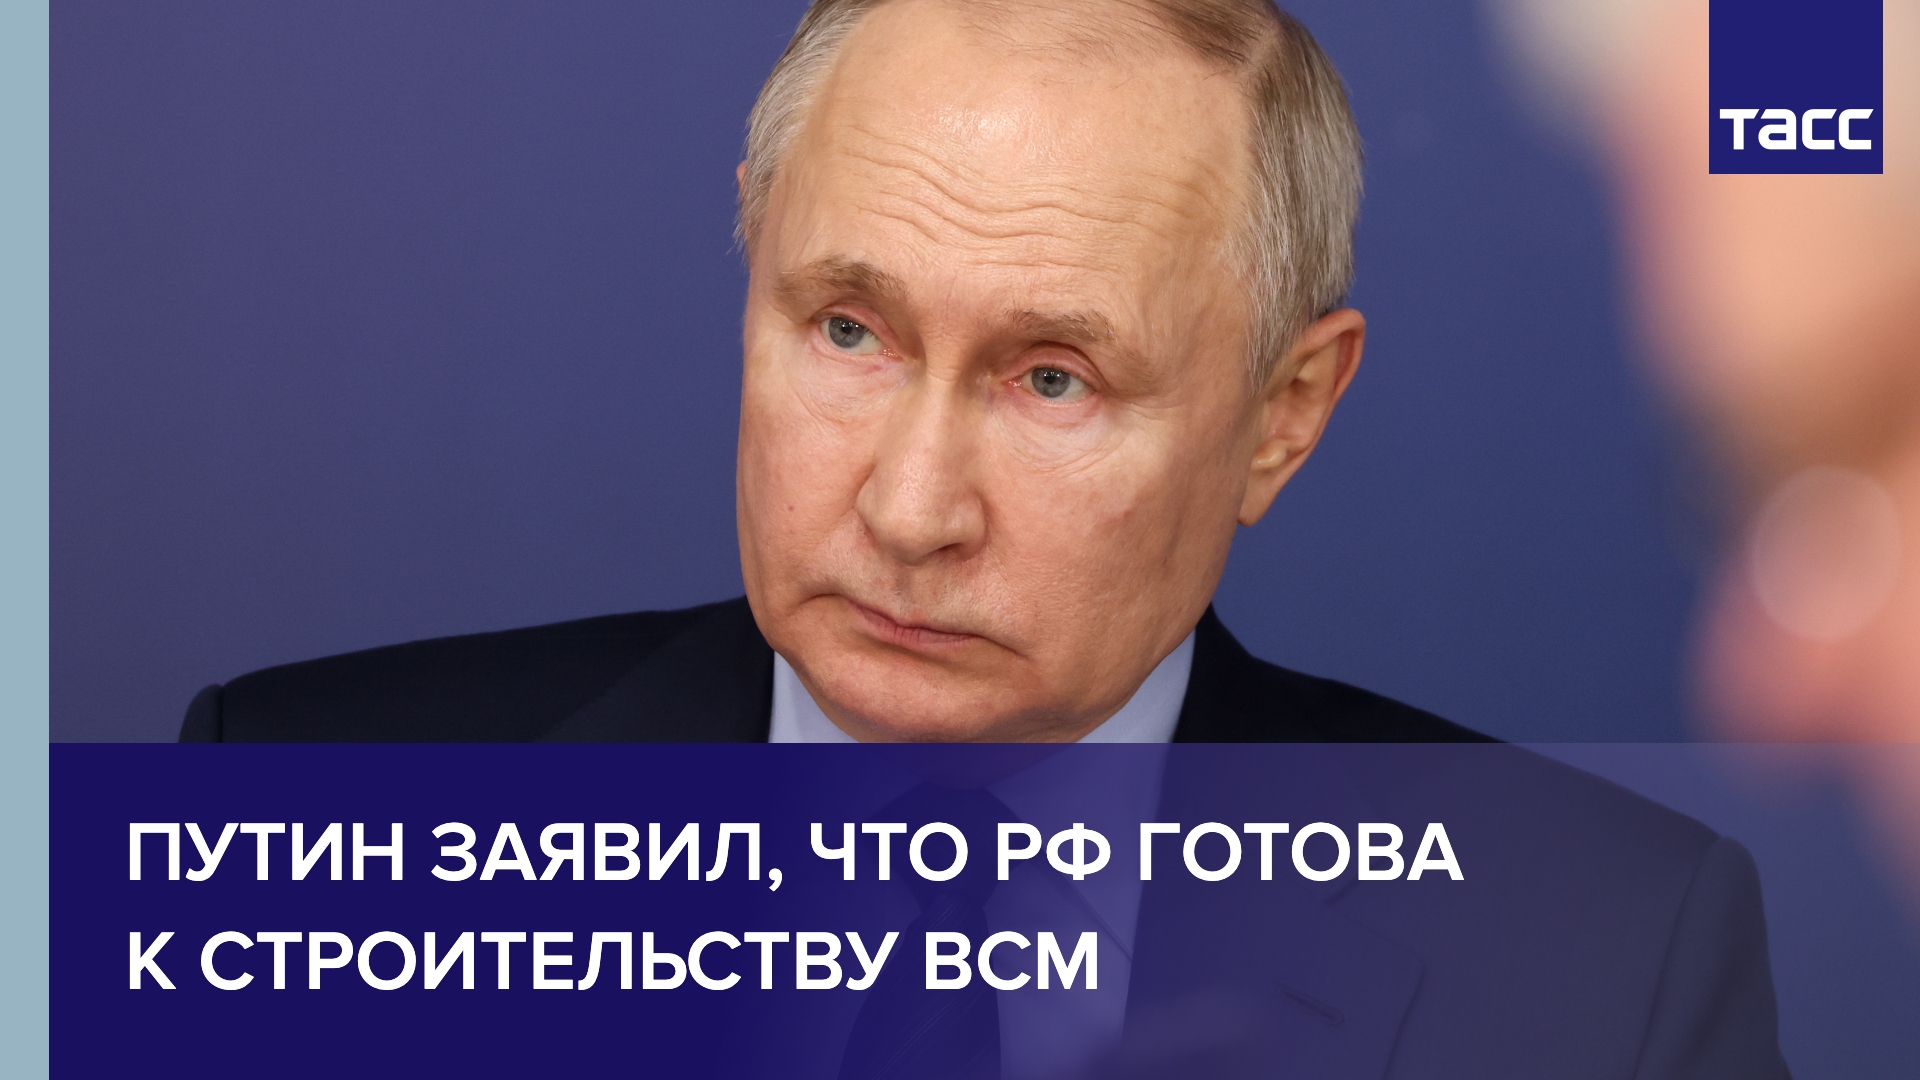 Путин заявил, что РФ готова к строительству ВСМ